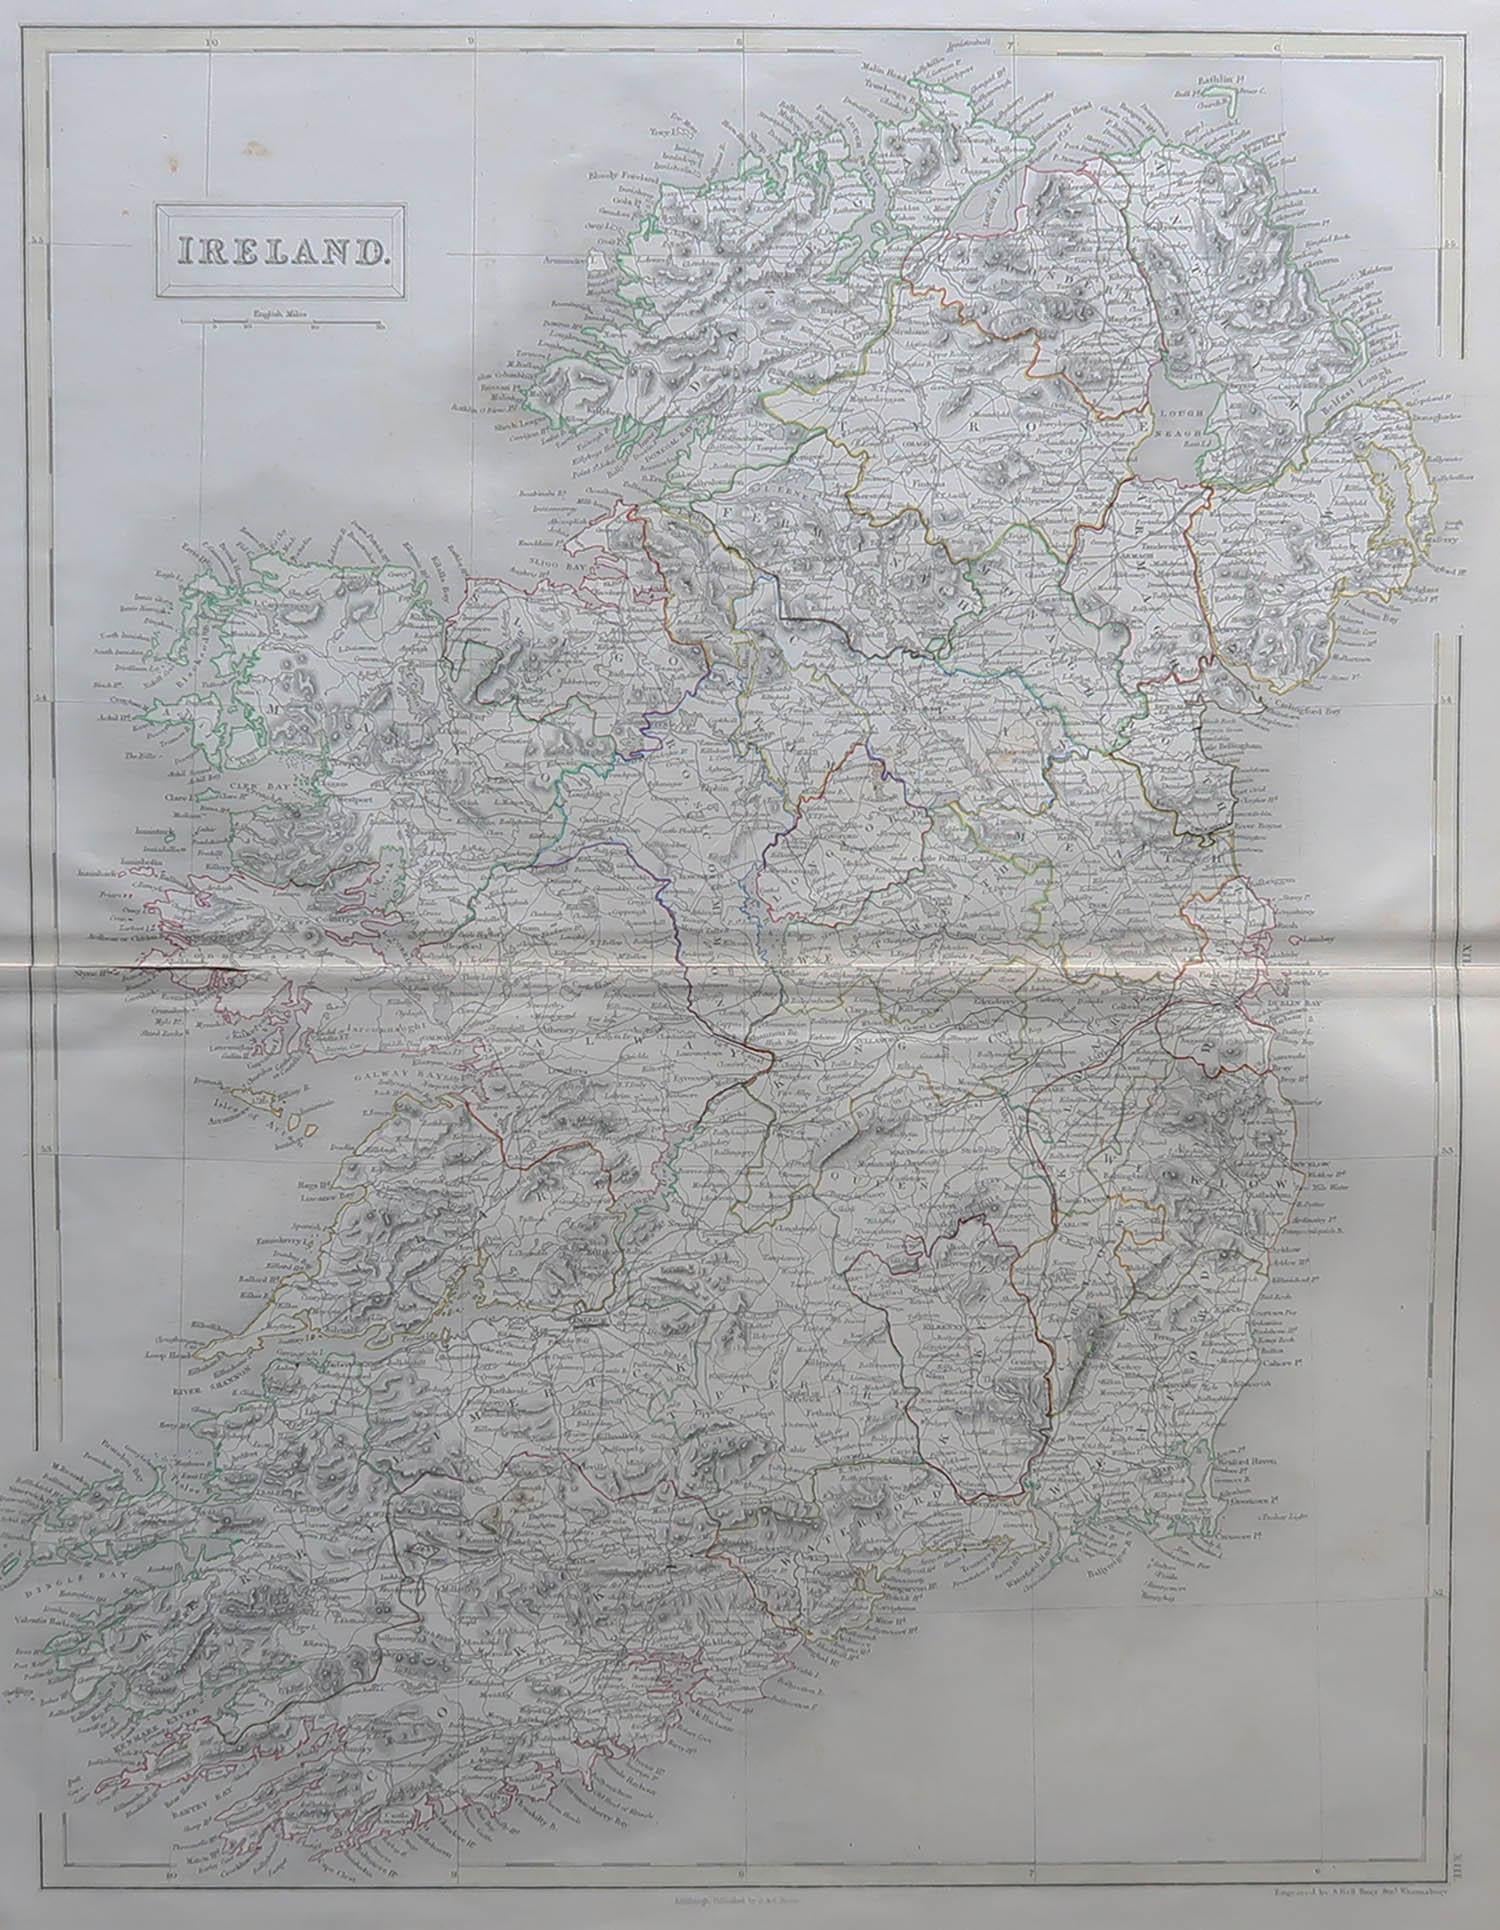 Grande carte de l'Irlande

Dessiné et gravé par Sidney Hall

Gravure sur acier 

Schéma de couleur original

Publié par A & C Black. 1847

Non encadré

Livraison gratuite.

